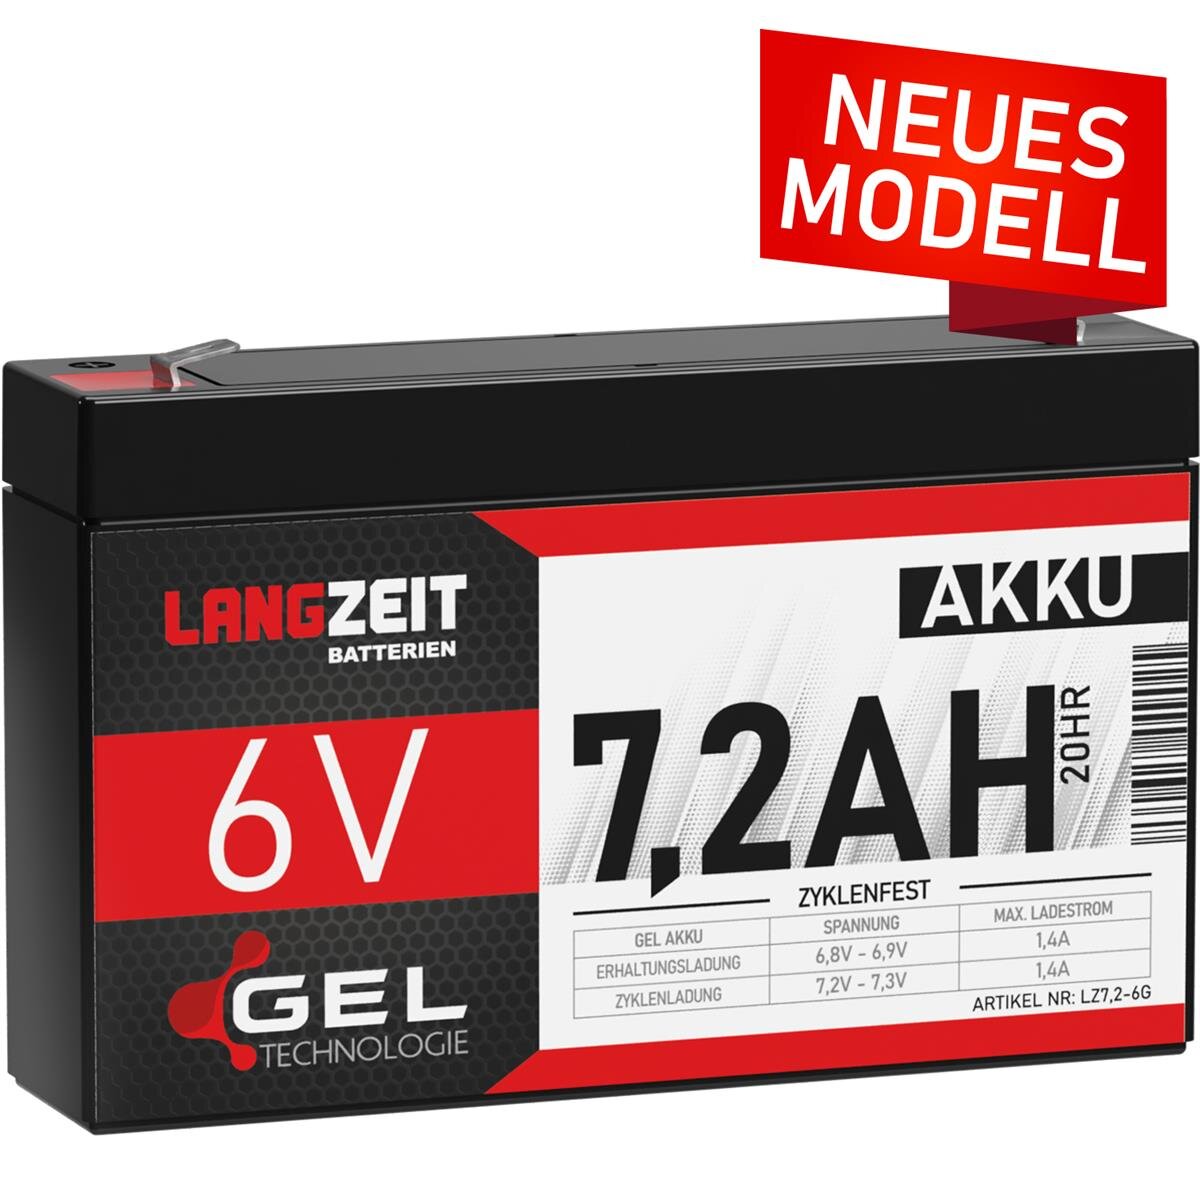 https://www.batteriespezialist.de/media/image/product/5714/lg/langzeit-gel-akku-72ah-6v.jpg